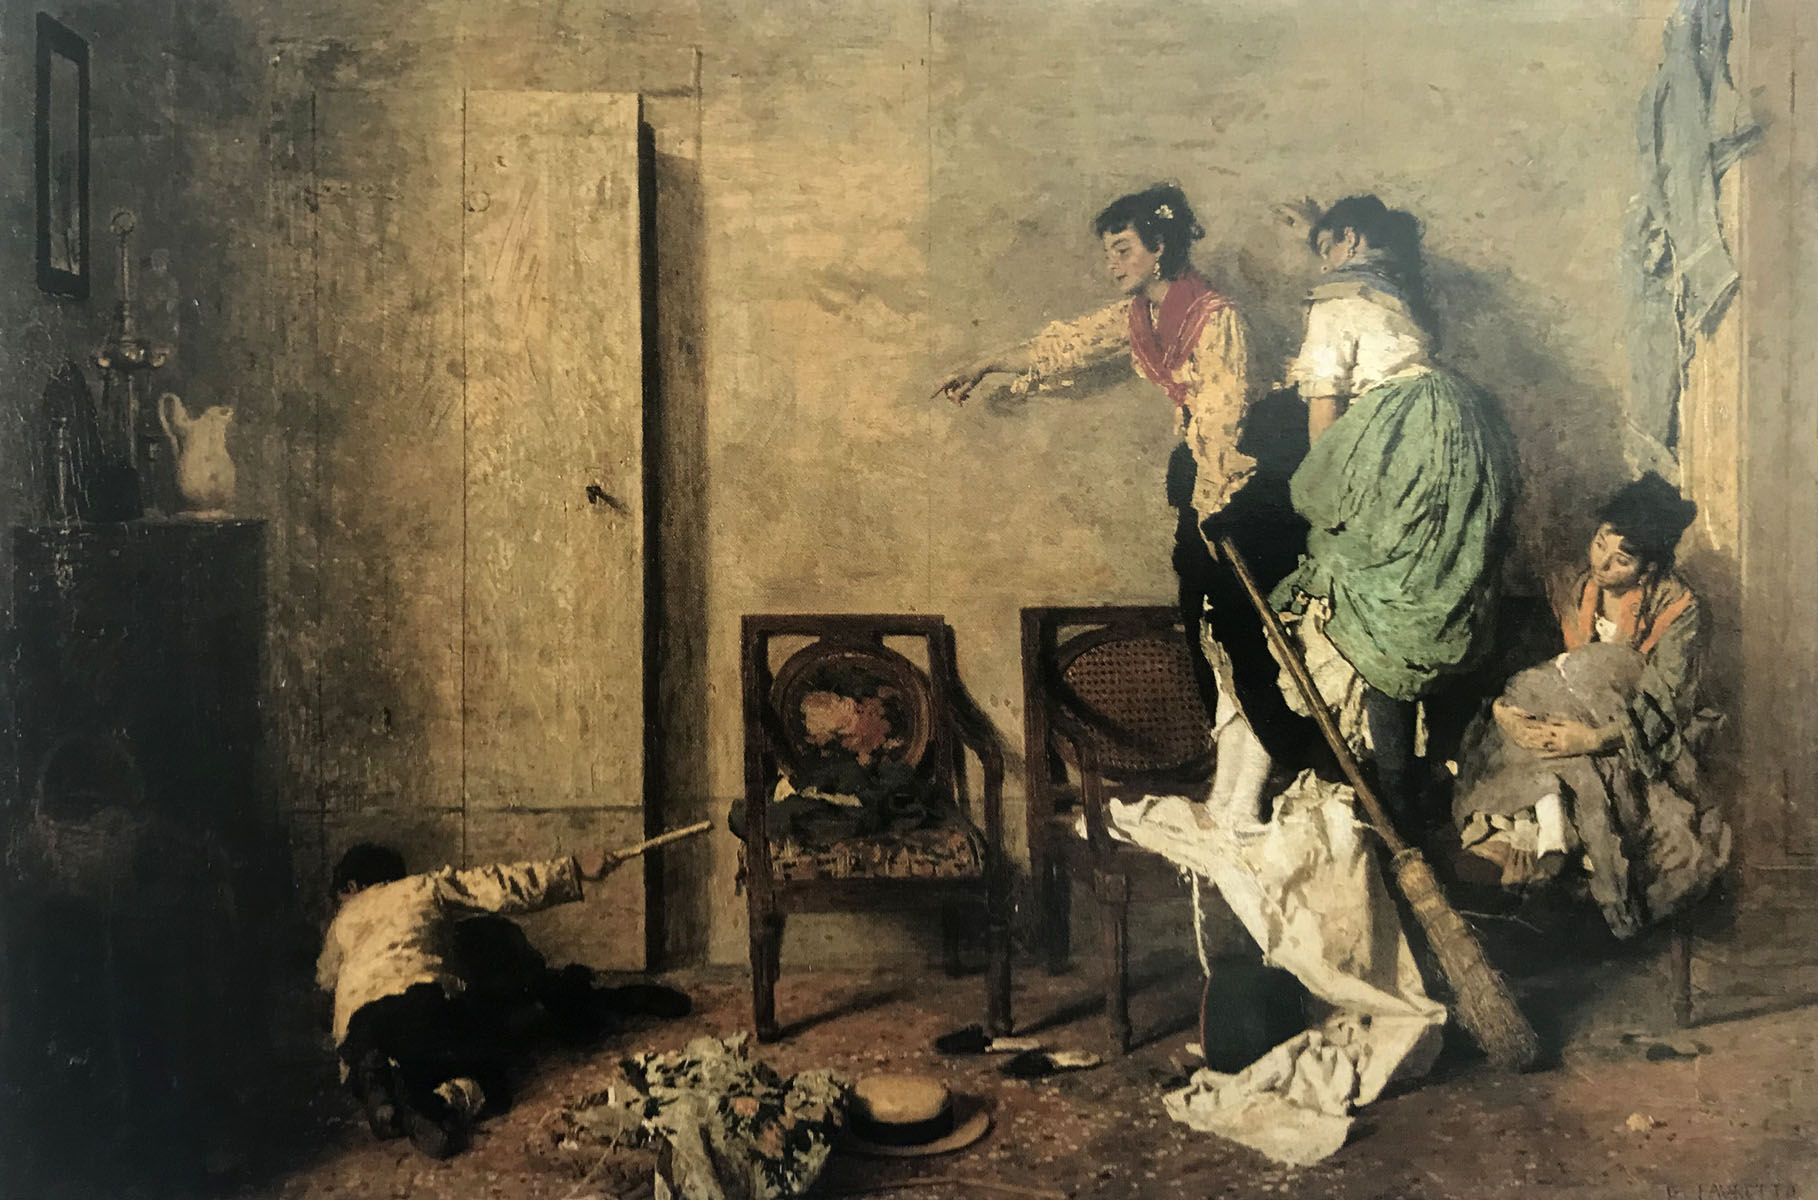 Il sorcio - 1878  Olio su tela, 59x90  - Pinacoteca di Brera, Milano